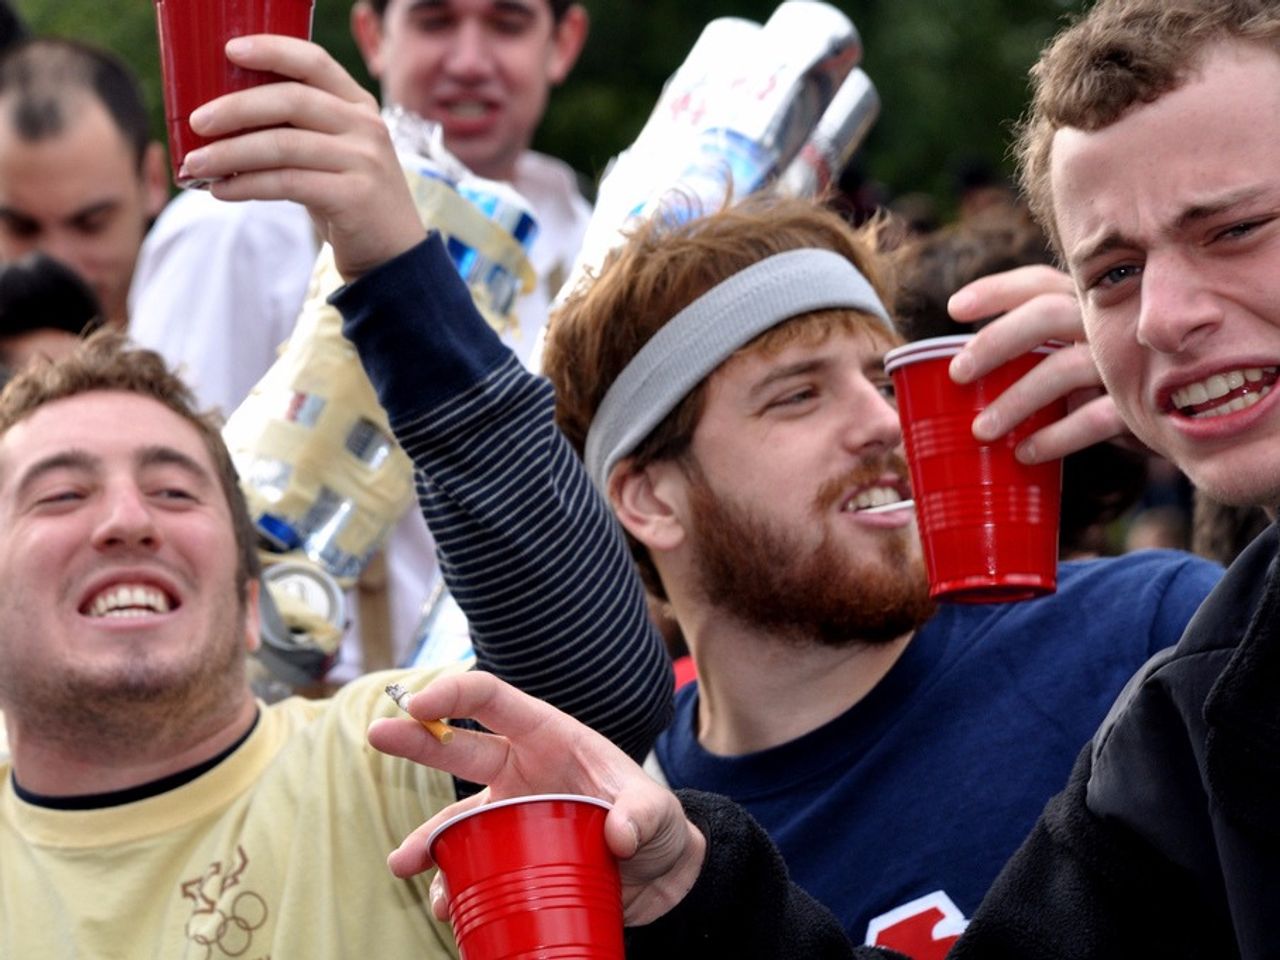 ドリンクのカップを片手に盛り上がる若い男性たち